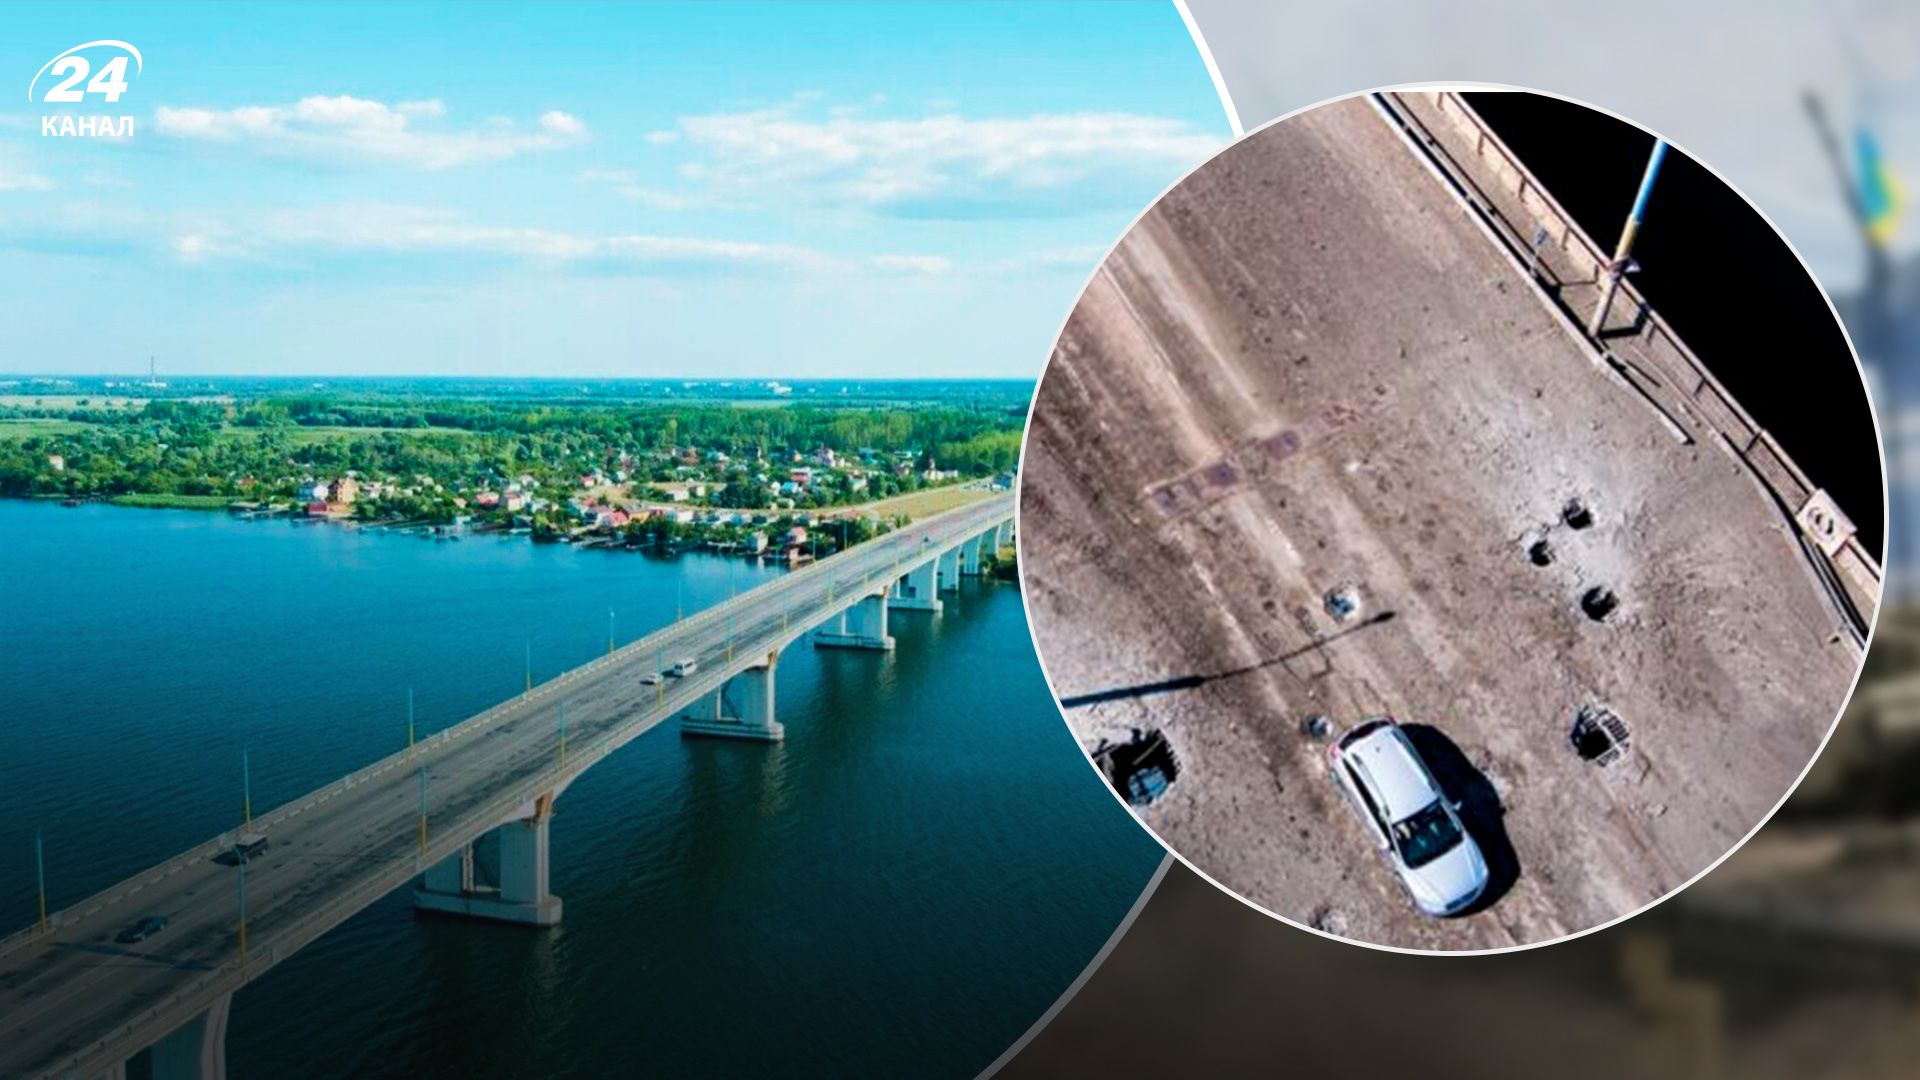 Російський бронеавтомобіль впав в річку через руйнування Антонівського мосту, – Молчанов